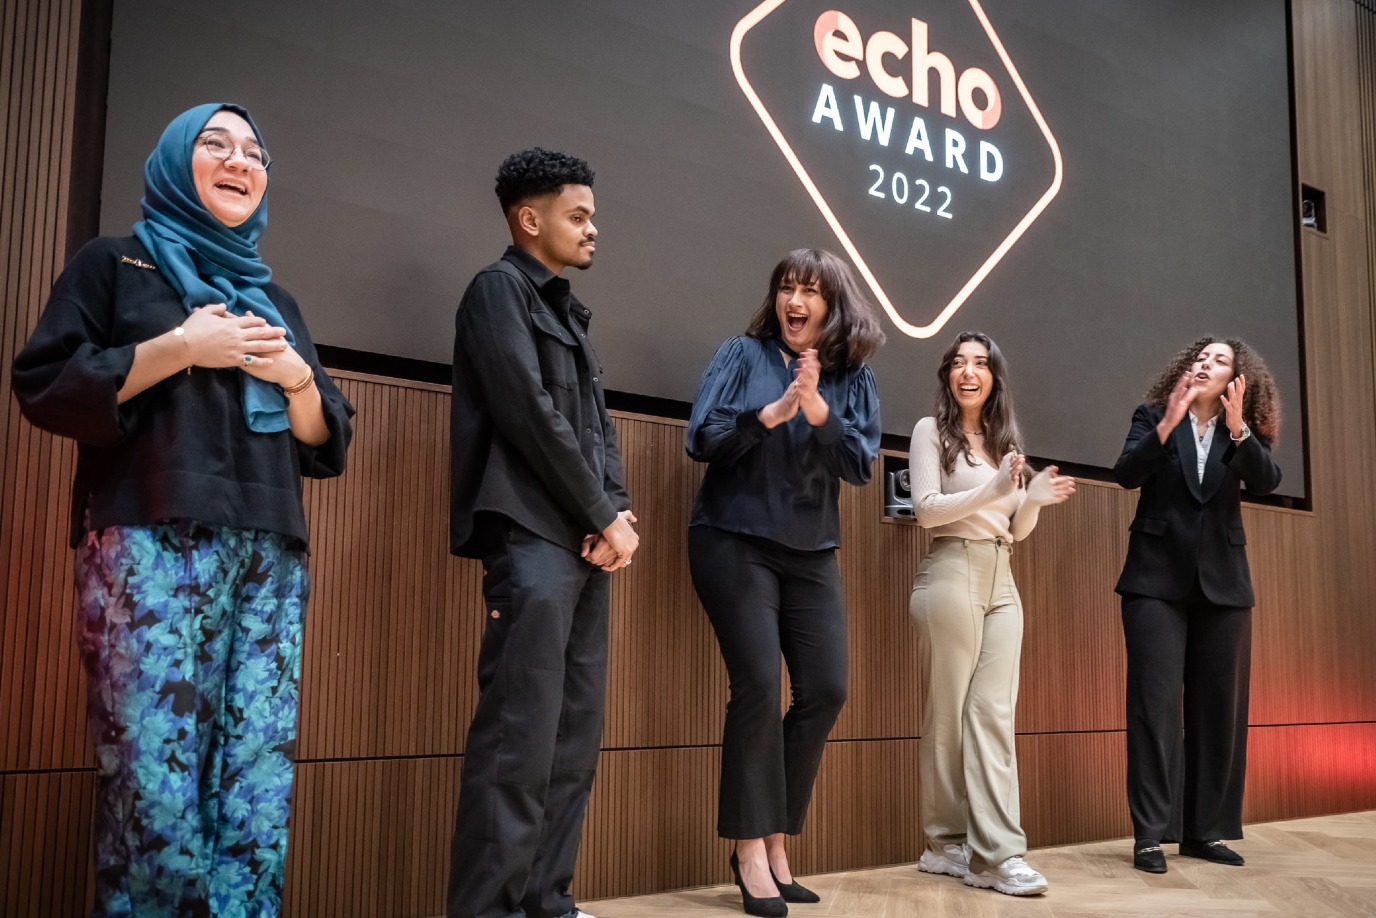 Vijf studenten vieren voor een scherm met de tekst "ECHO Award 2022".